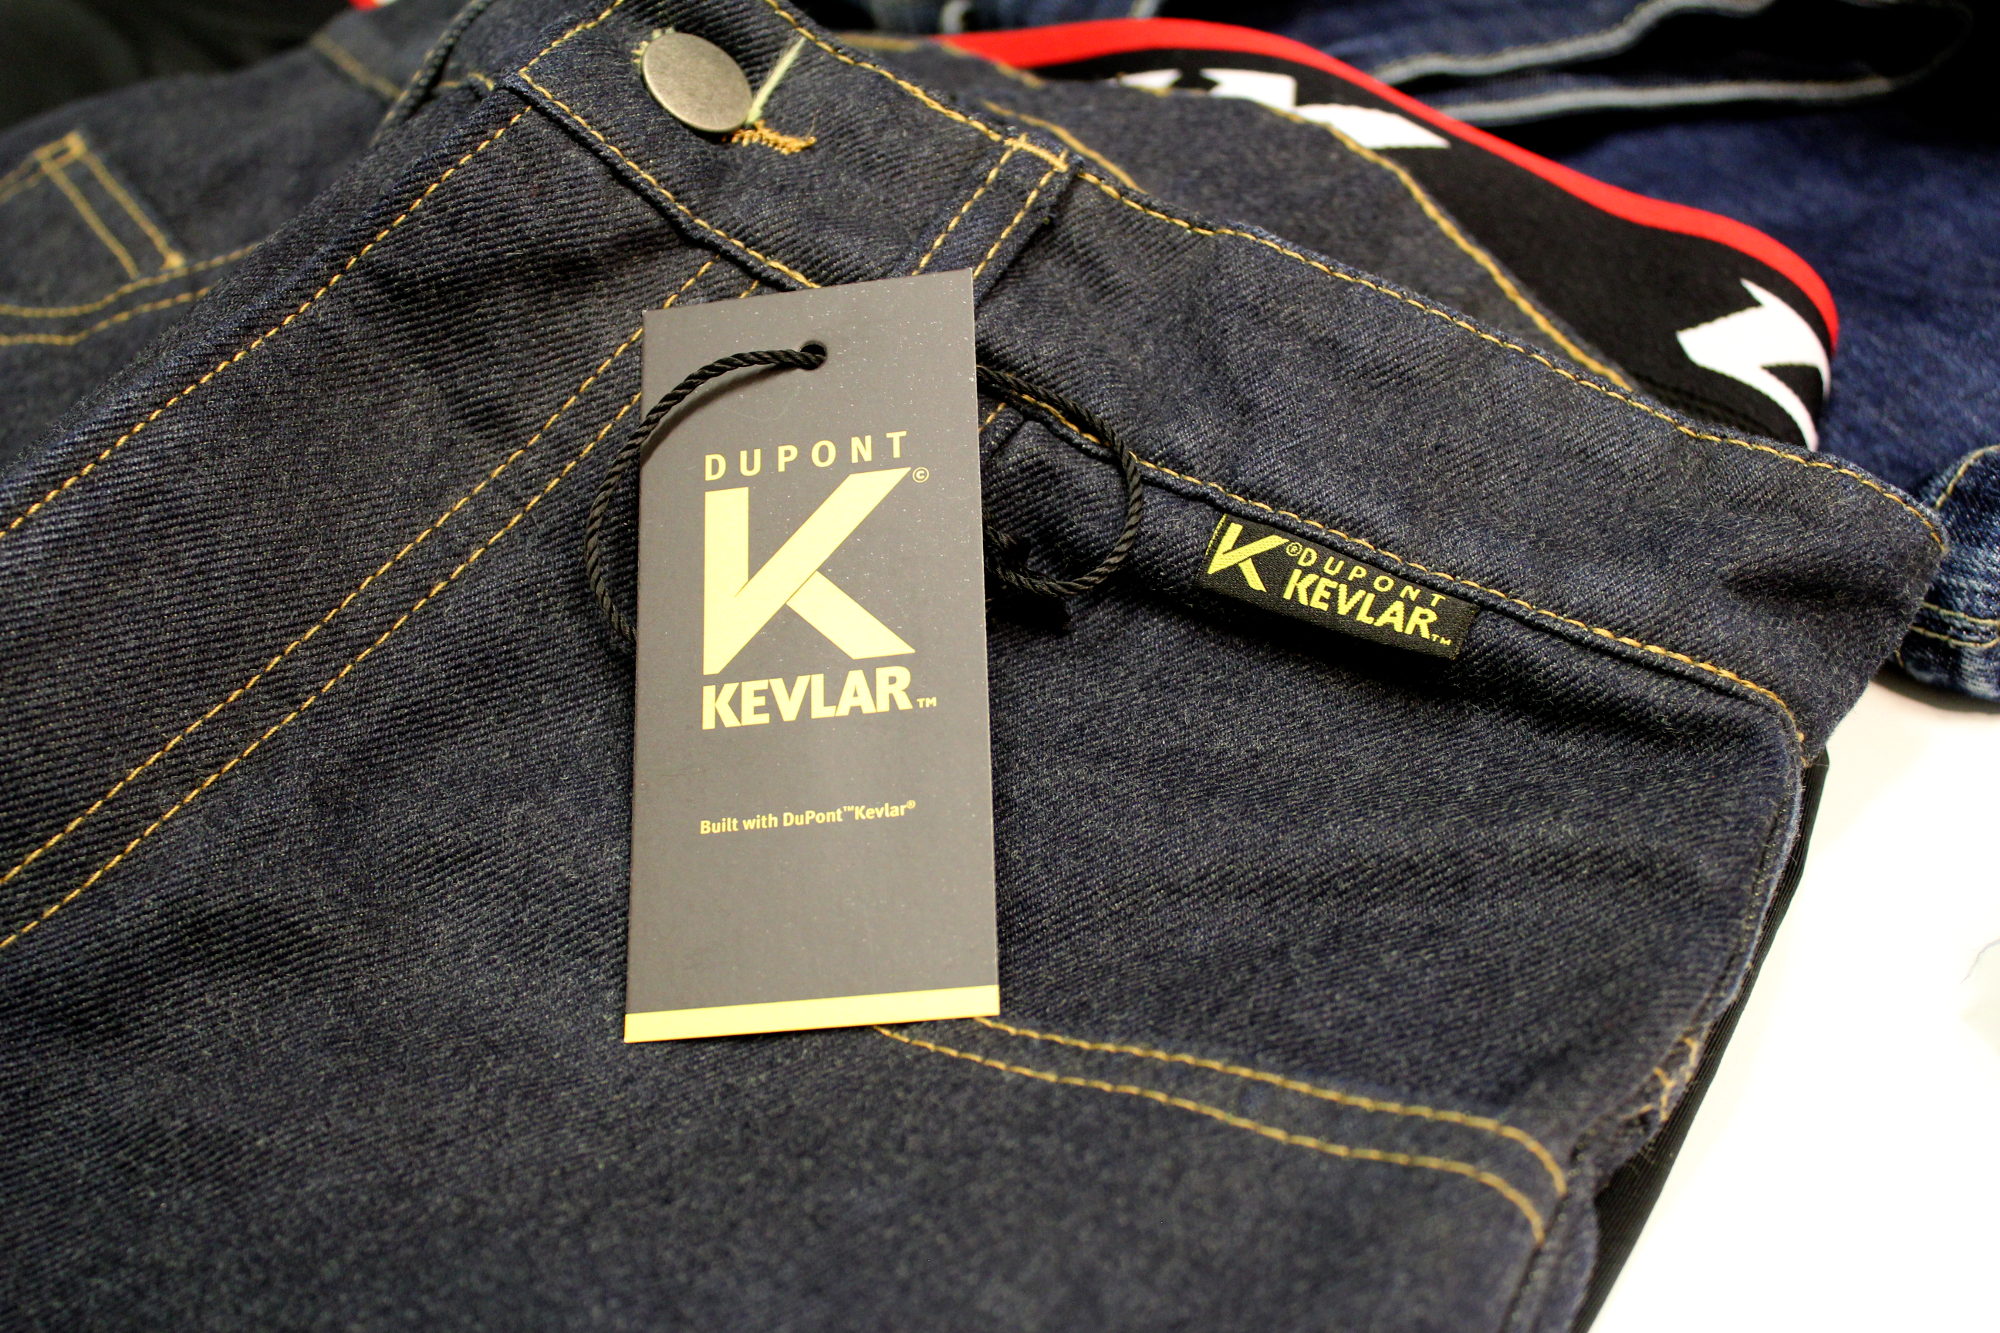 A partir de 2019, la equipación con Kevlar® se identificará mediante estas etiquetas